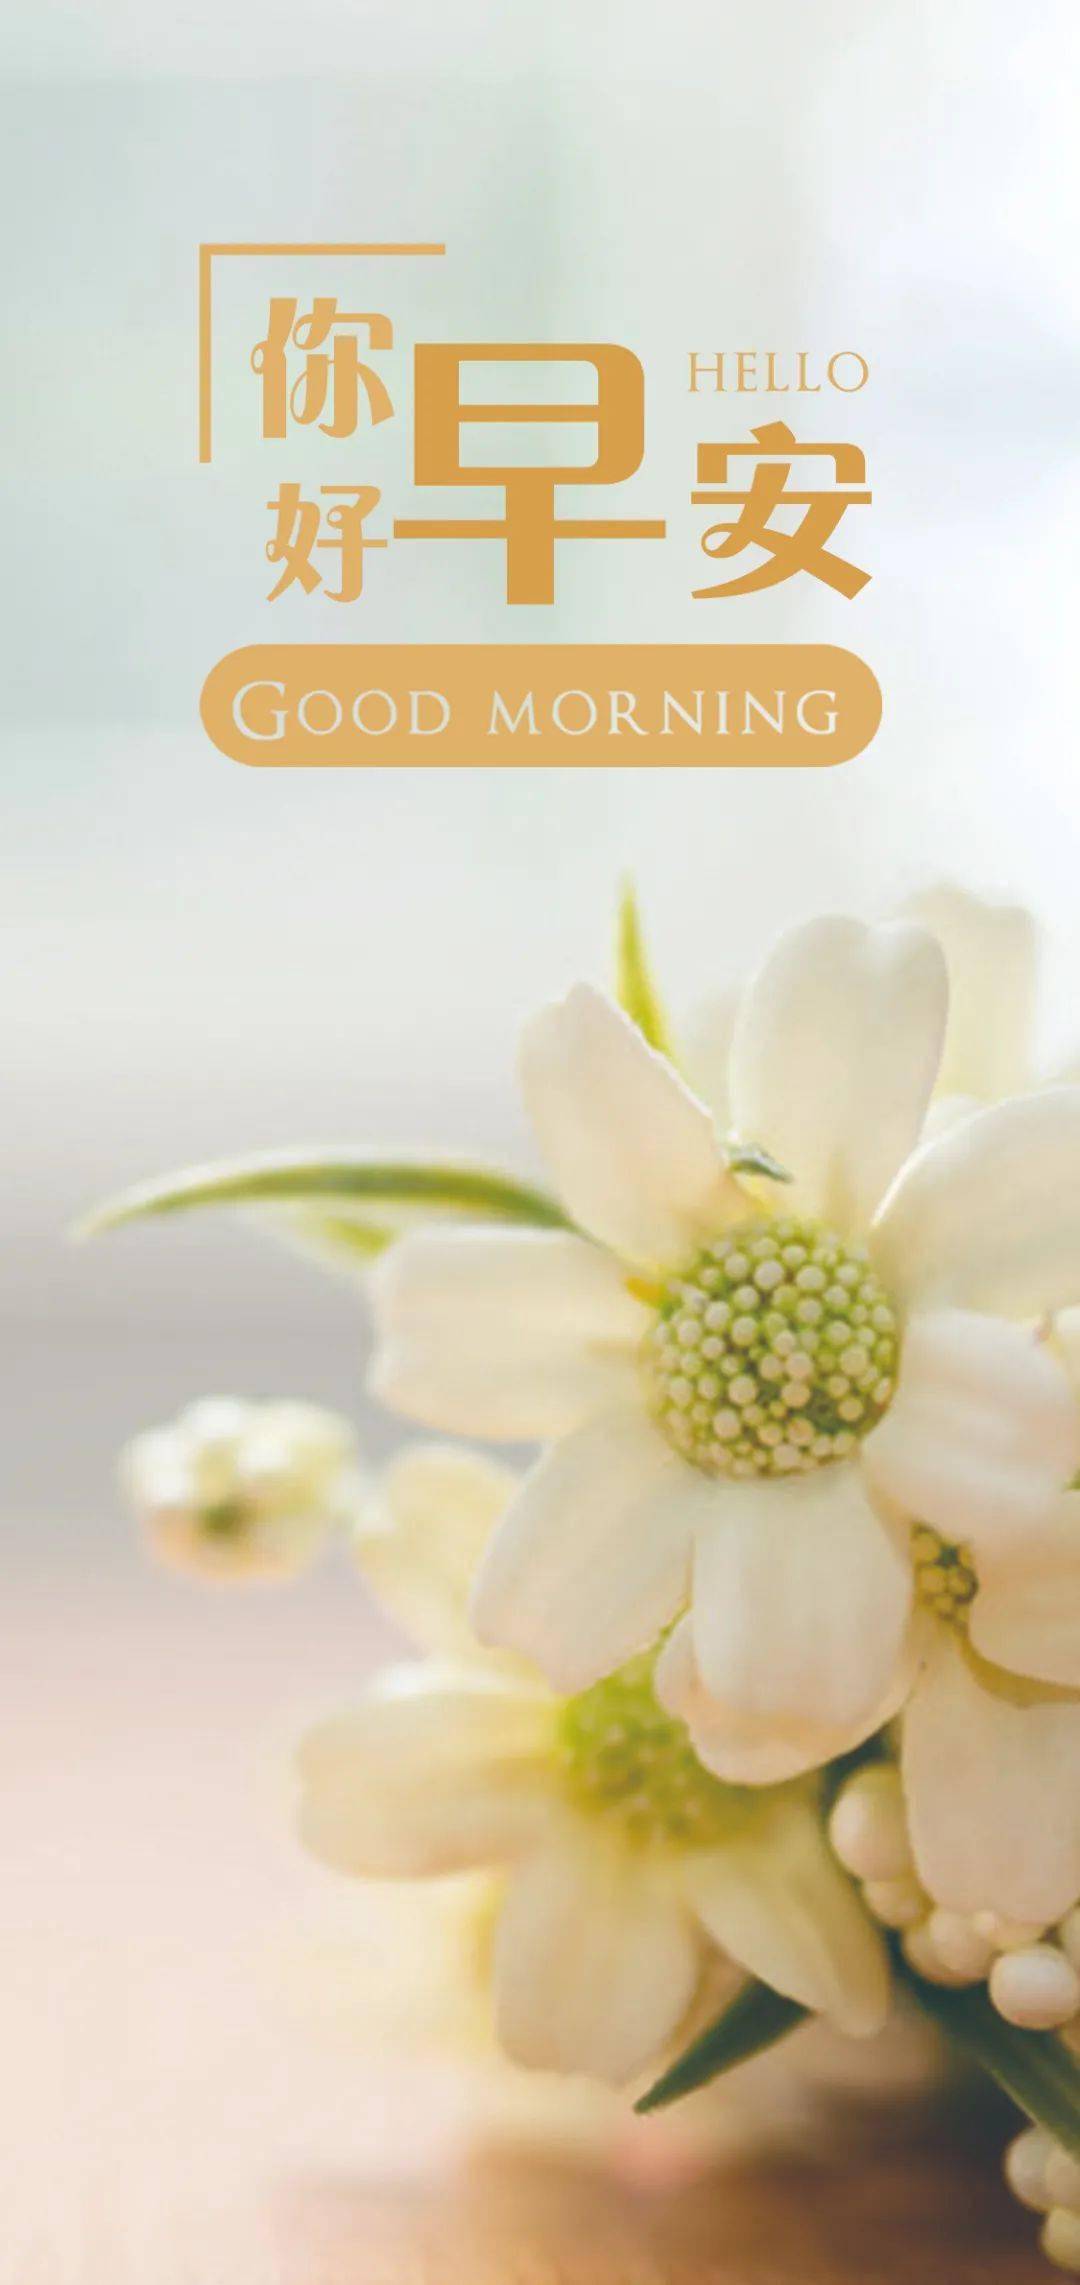 朋友圈早安最新出的正能量说说句子 清晨最好看的早安